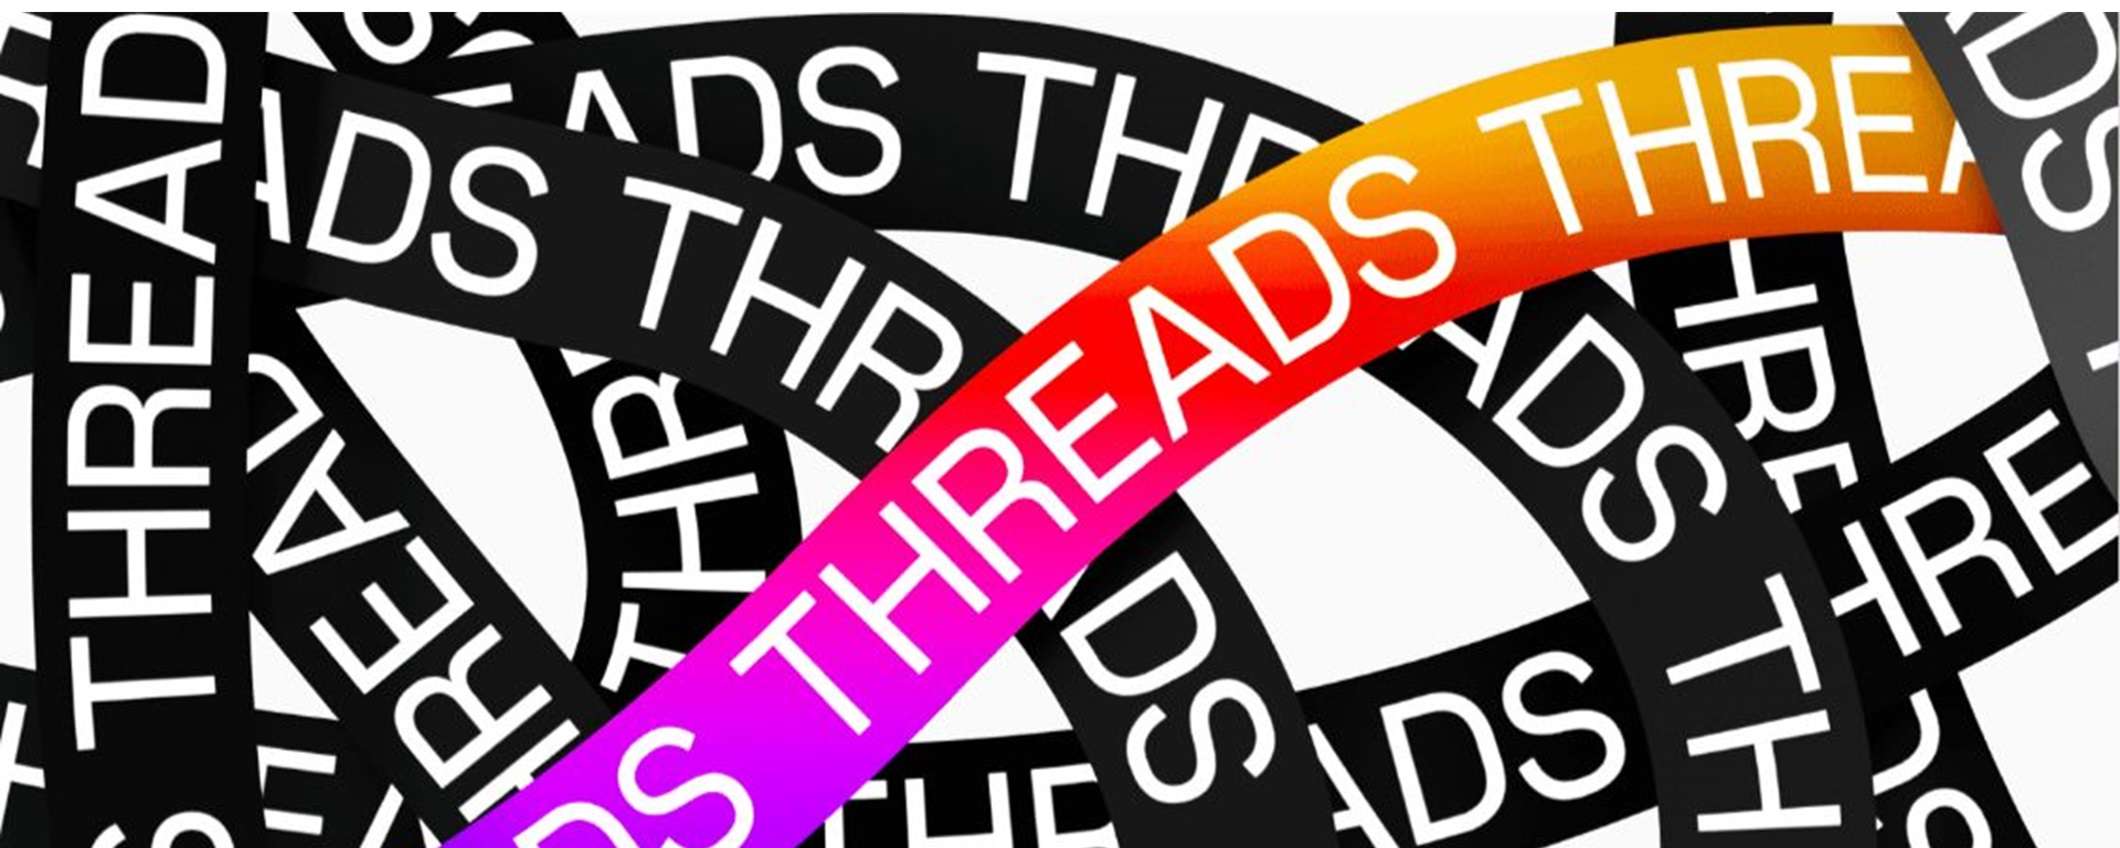 Threads: come si usa il social di Meta